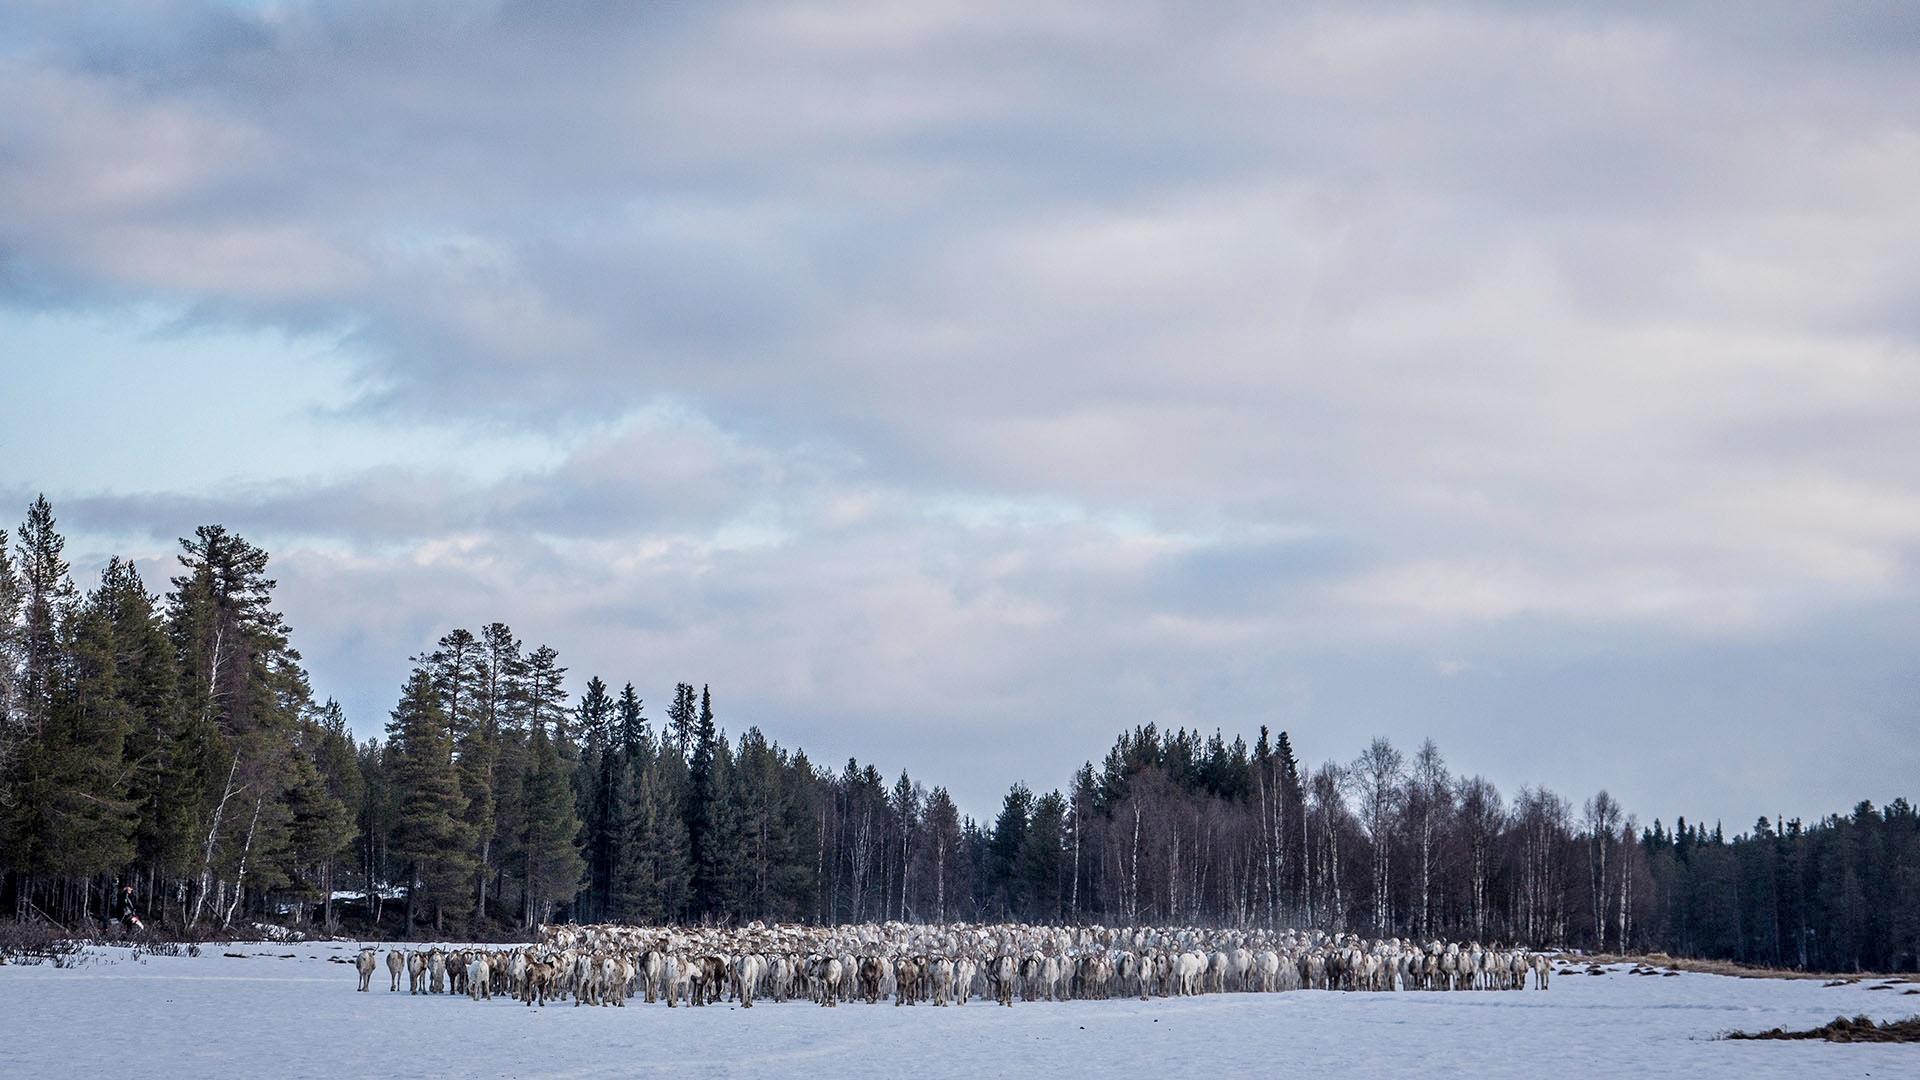 Migrating reindeer